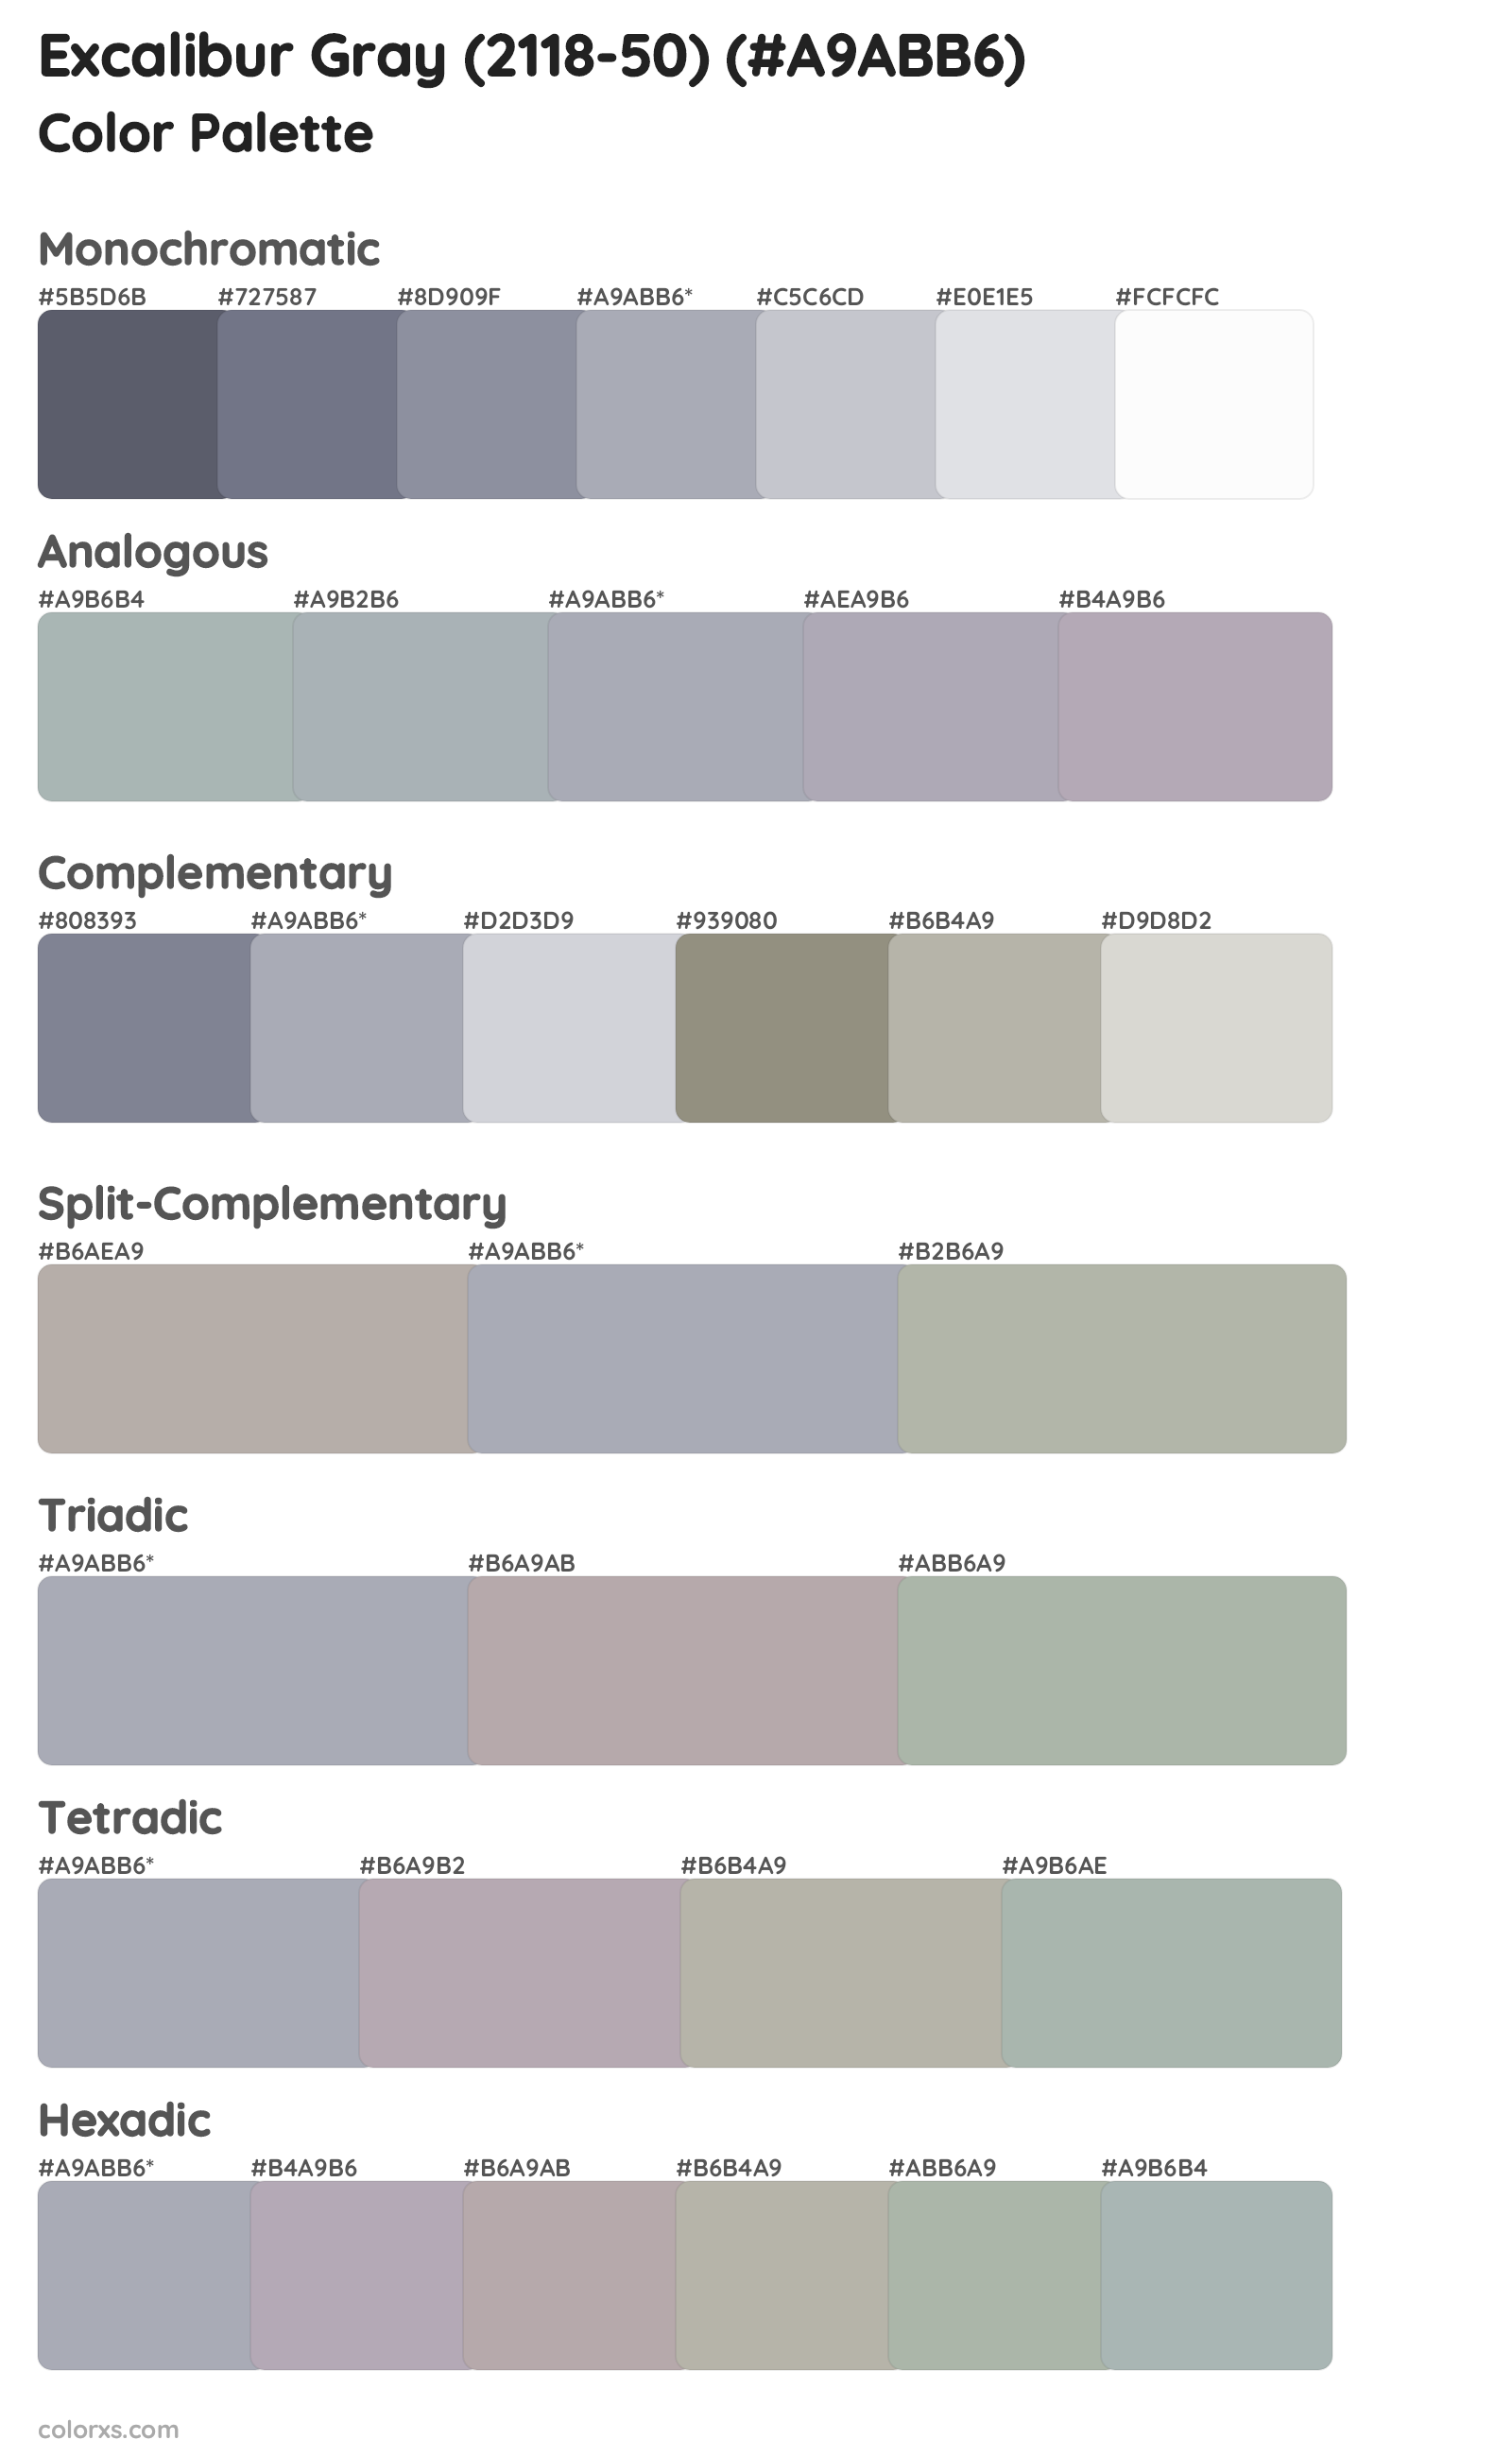 Excalibur Gray (2118-50) Color Scheme Palettes